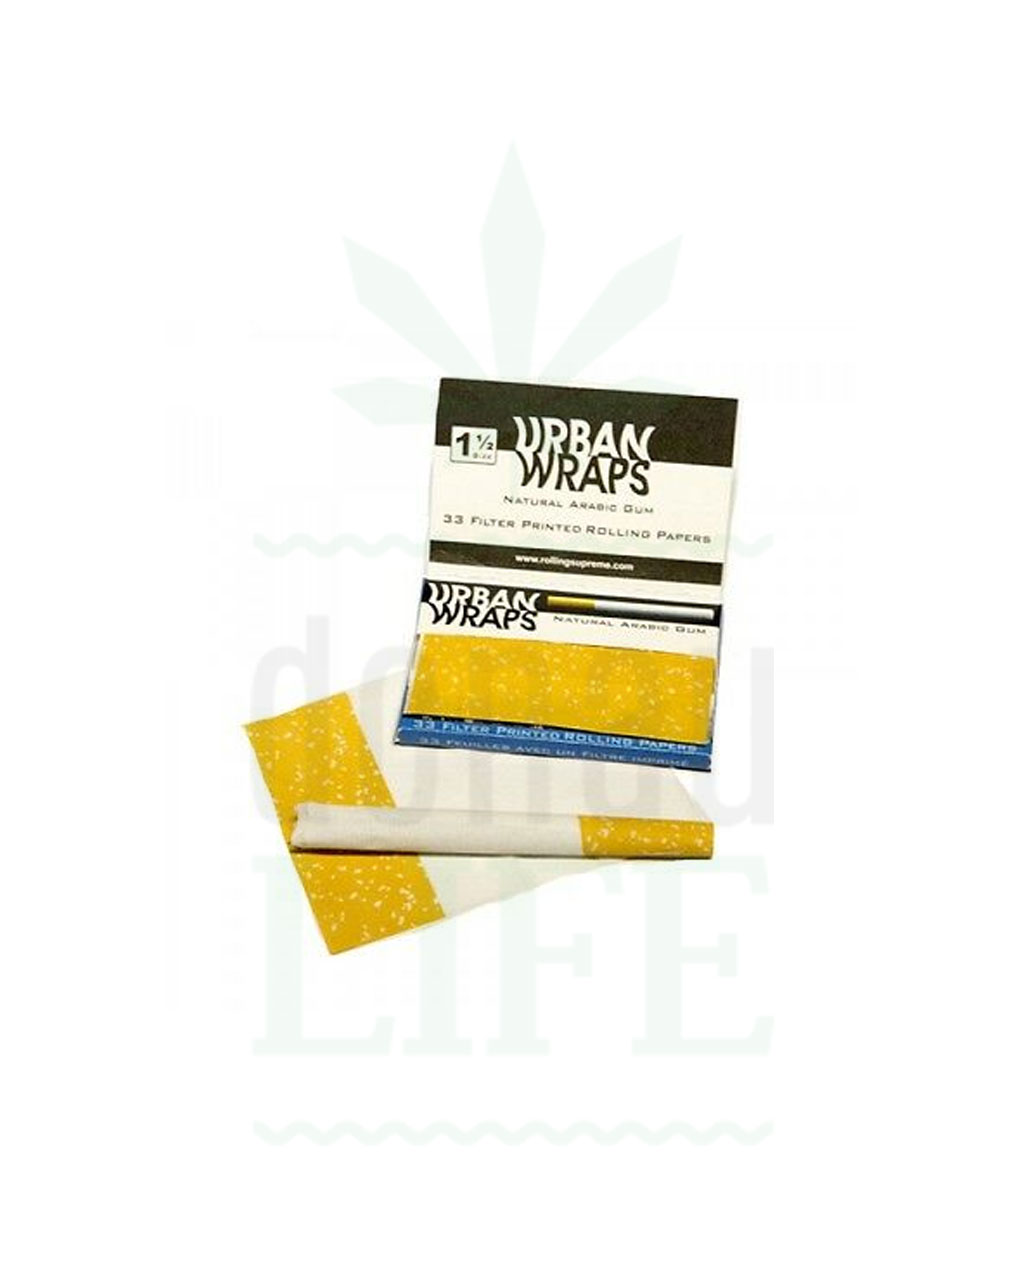 Papers URBAN WRAPS 1 1/2 Size Papers Zigaretten Druck | 33 Blatt